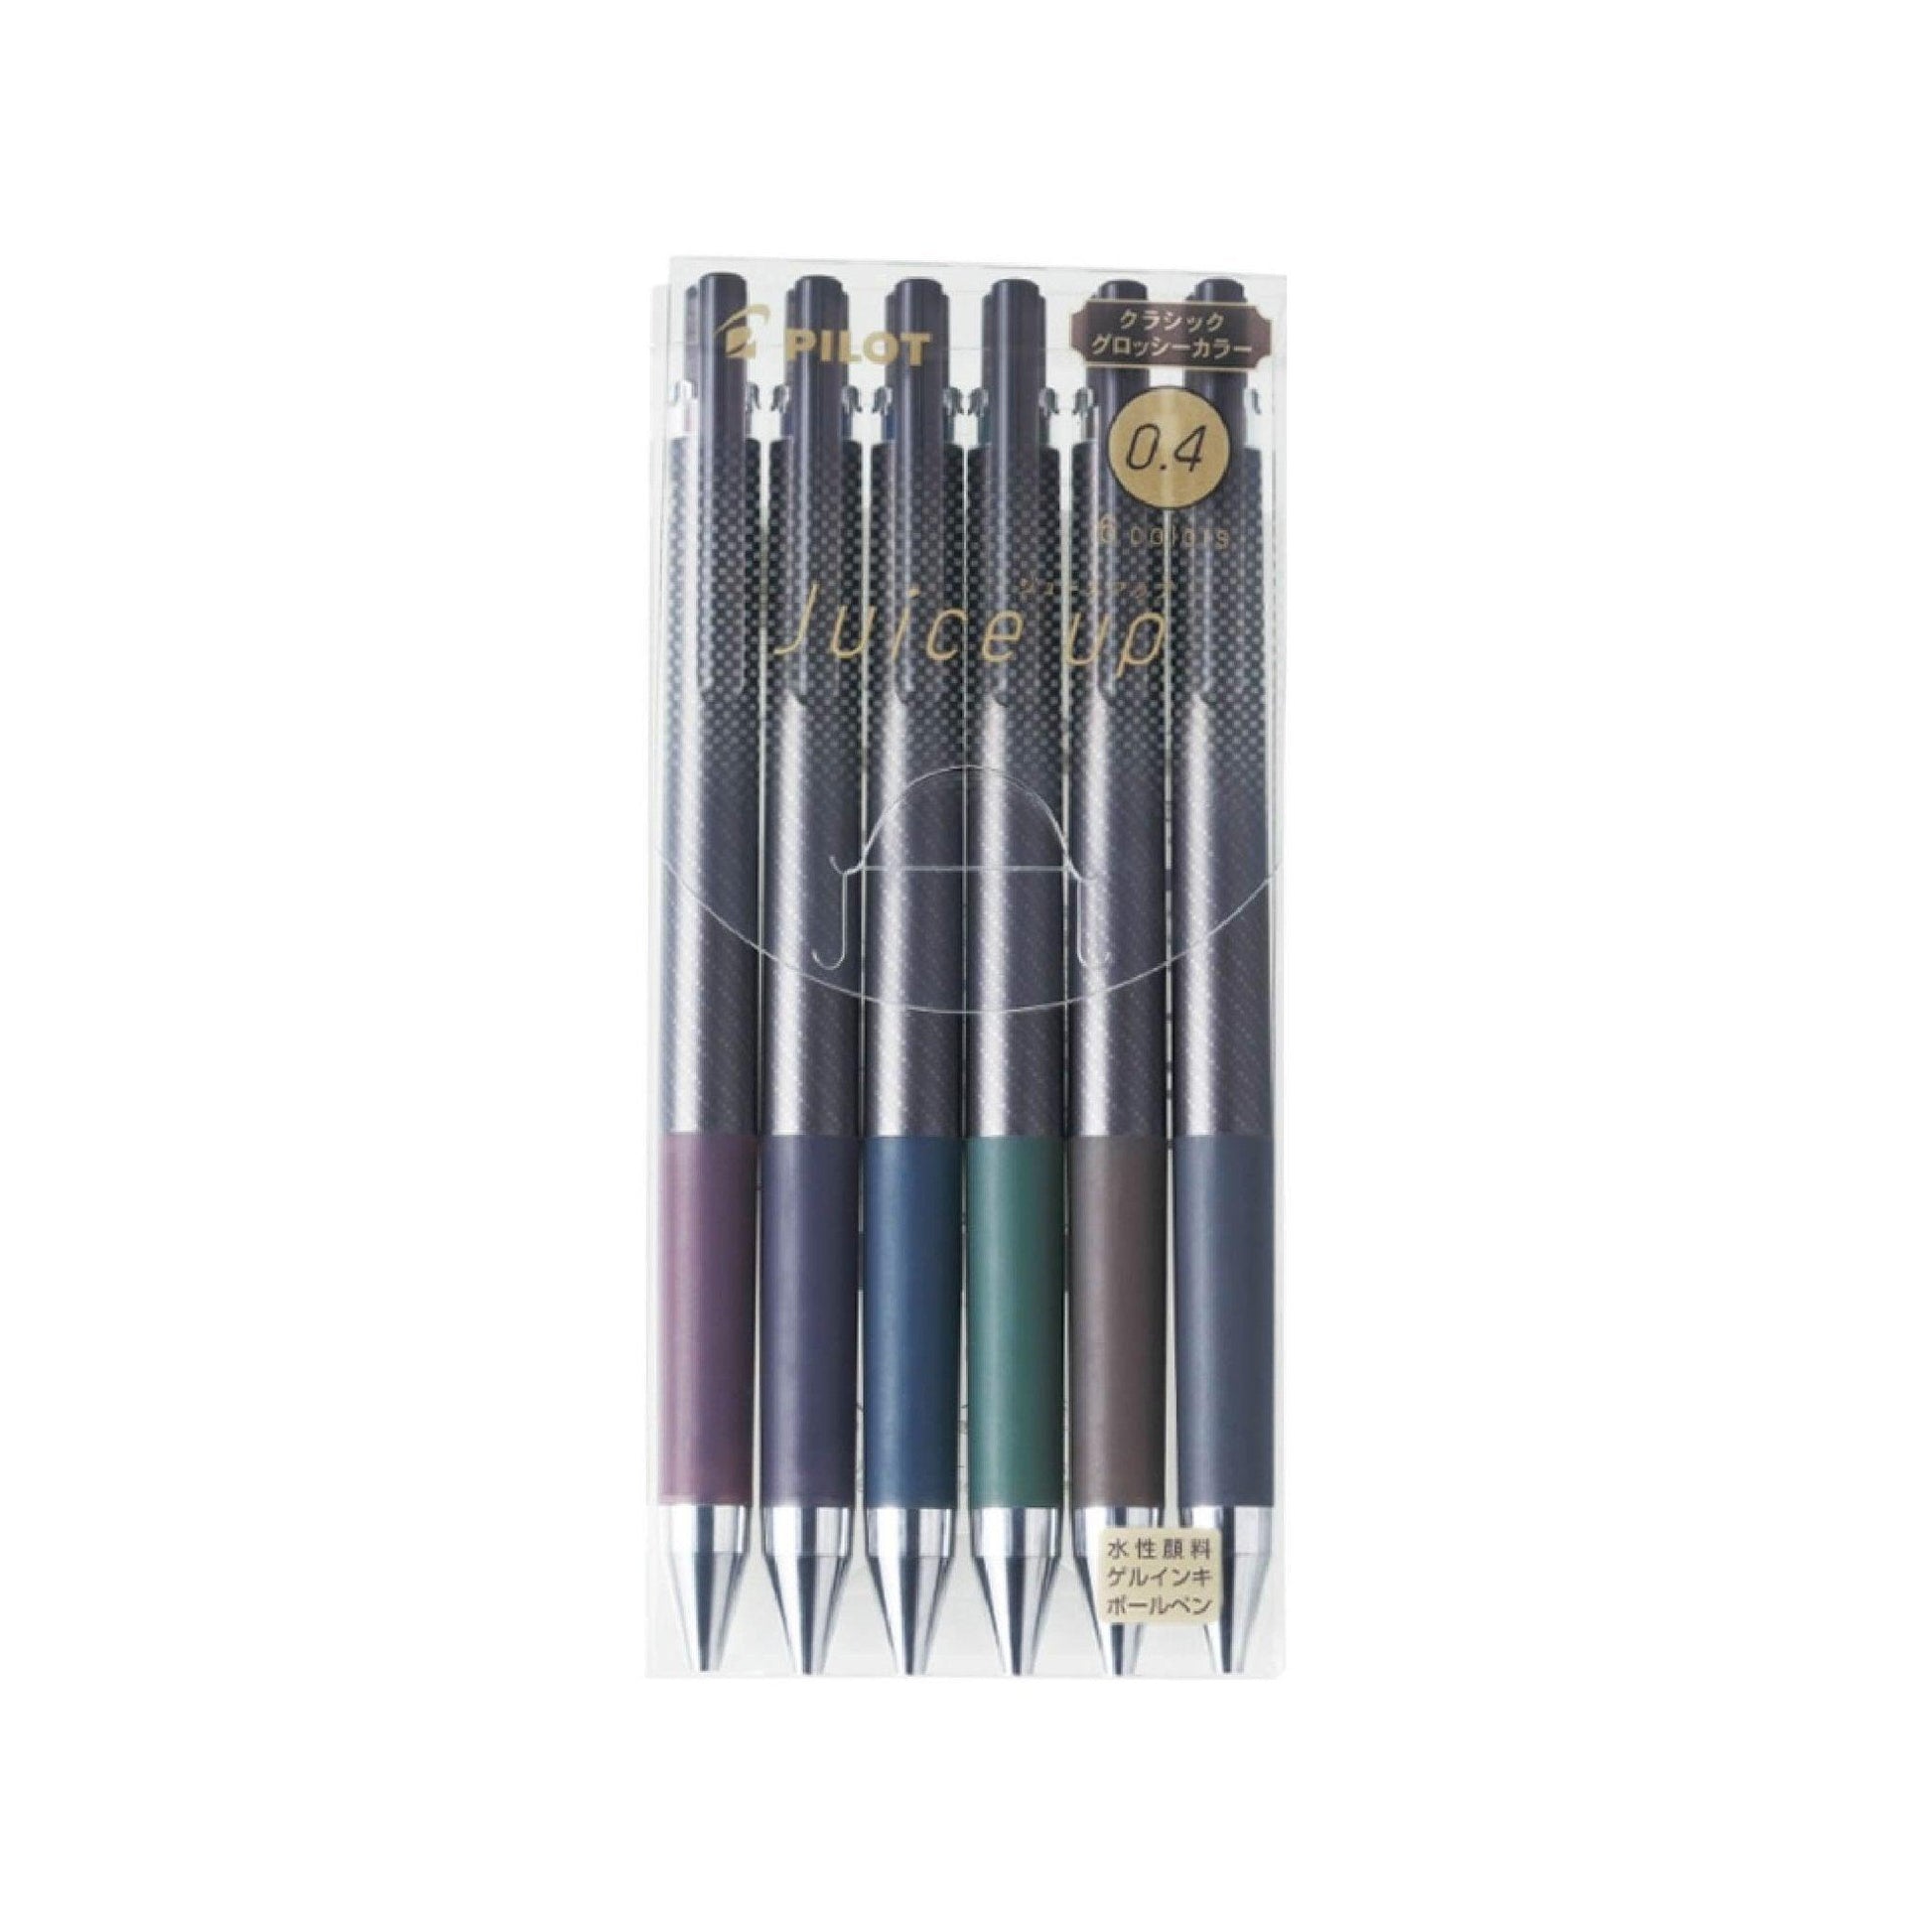 Pen Review: Pilot Juice 6-Color Metallic & Pastel Sets (with Bonus